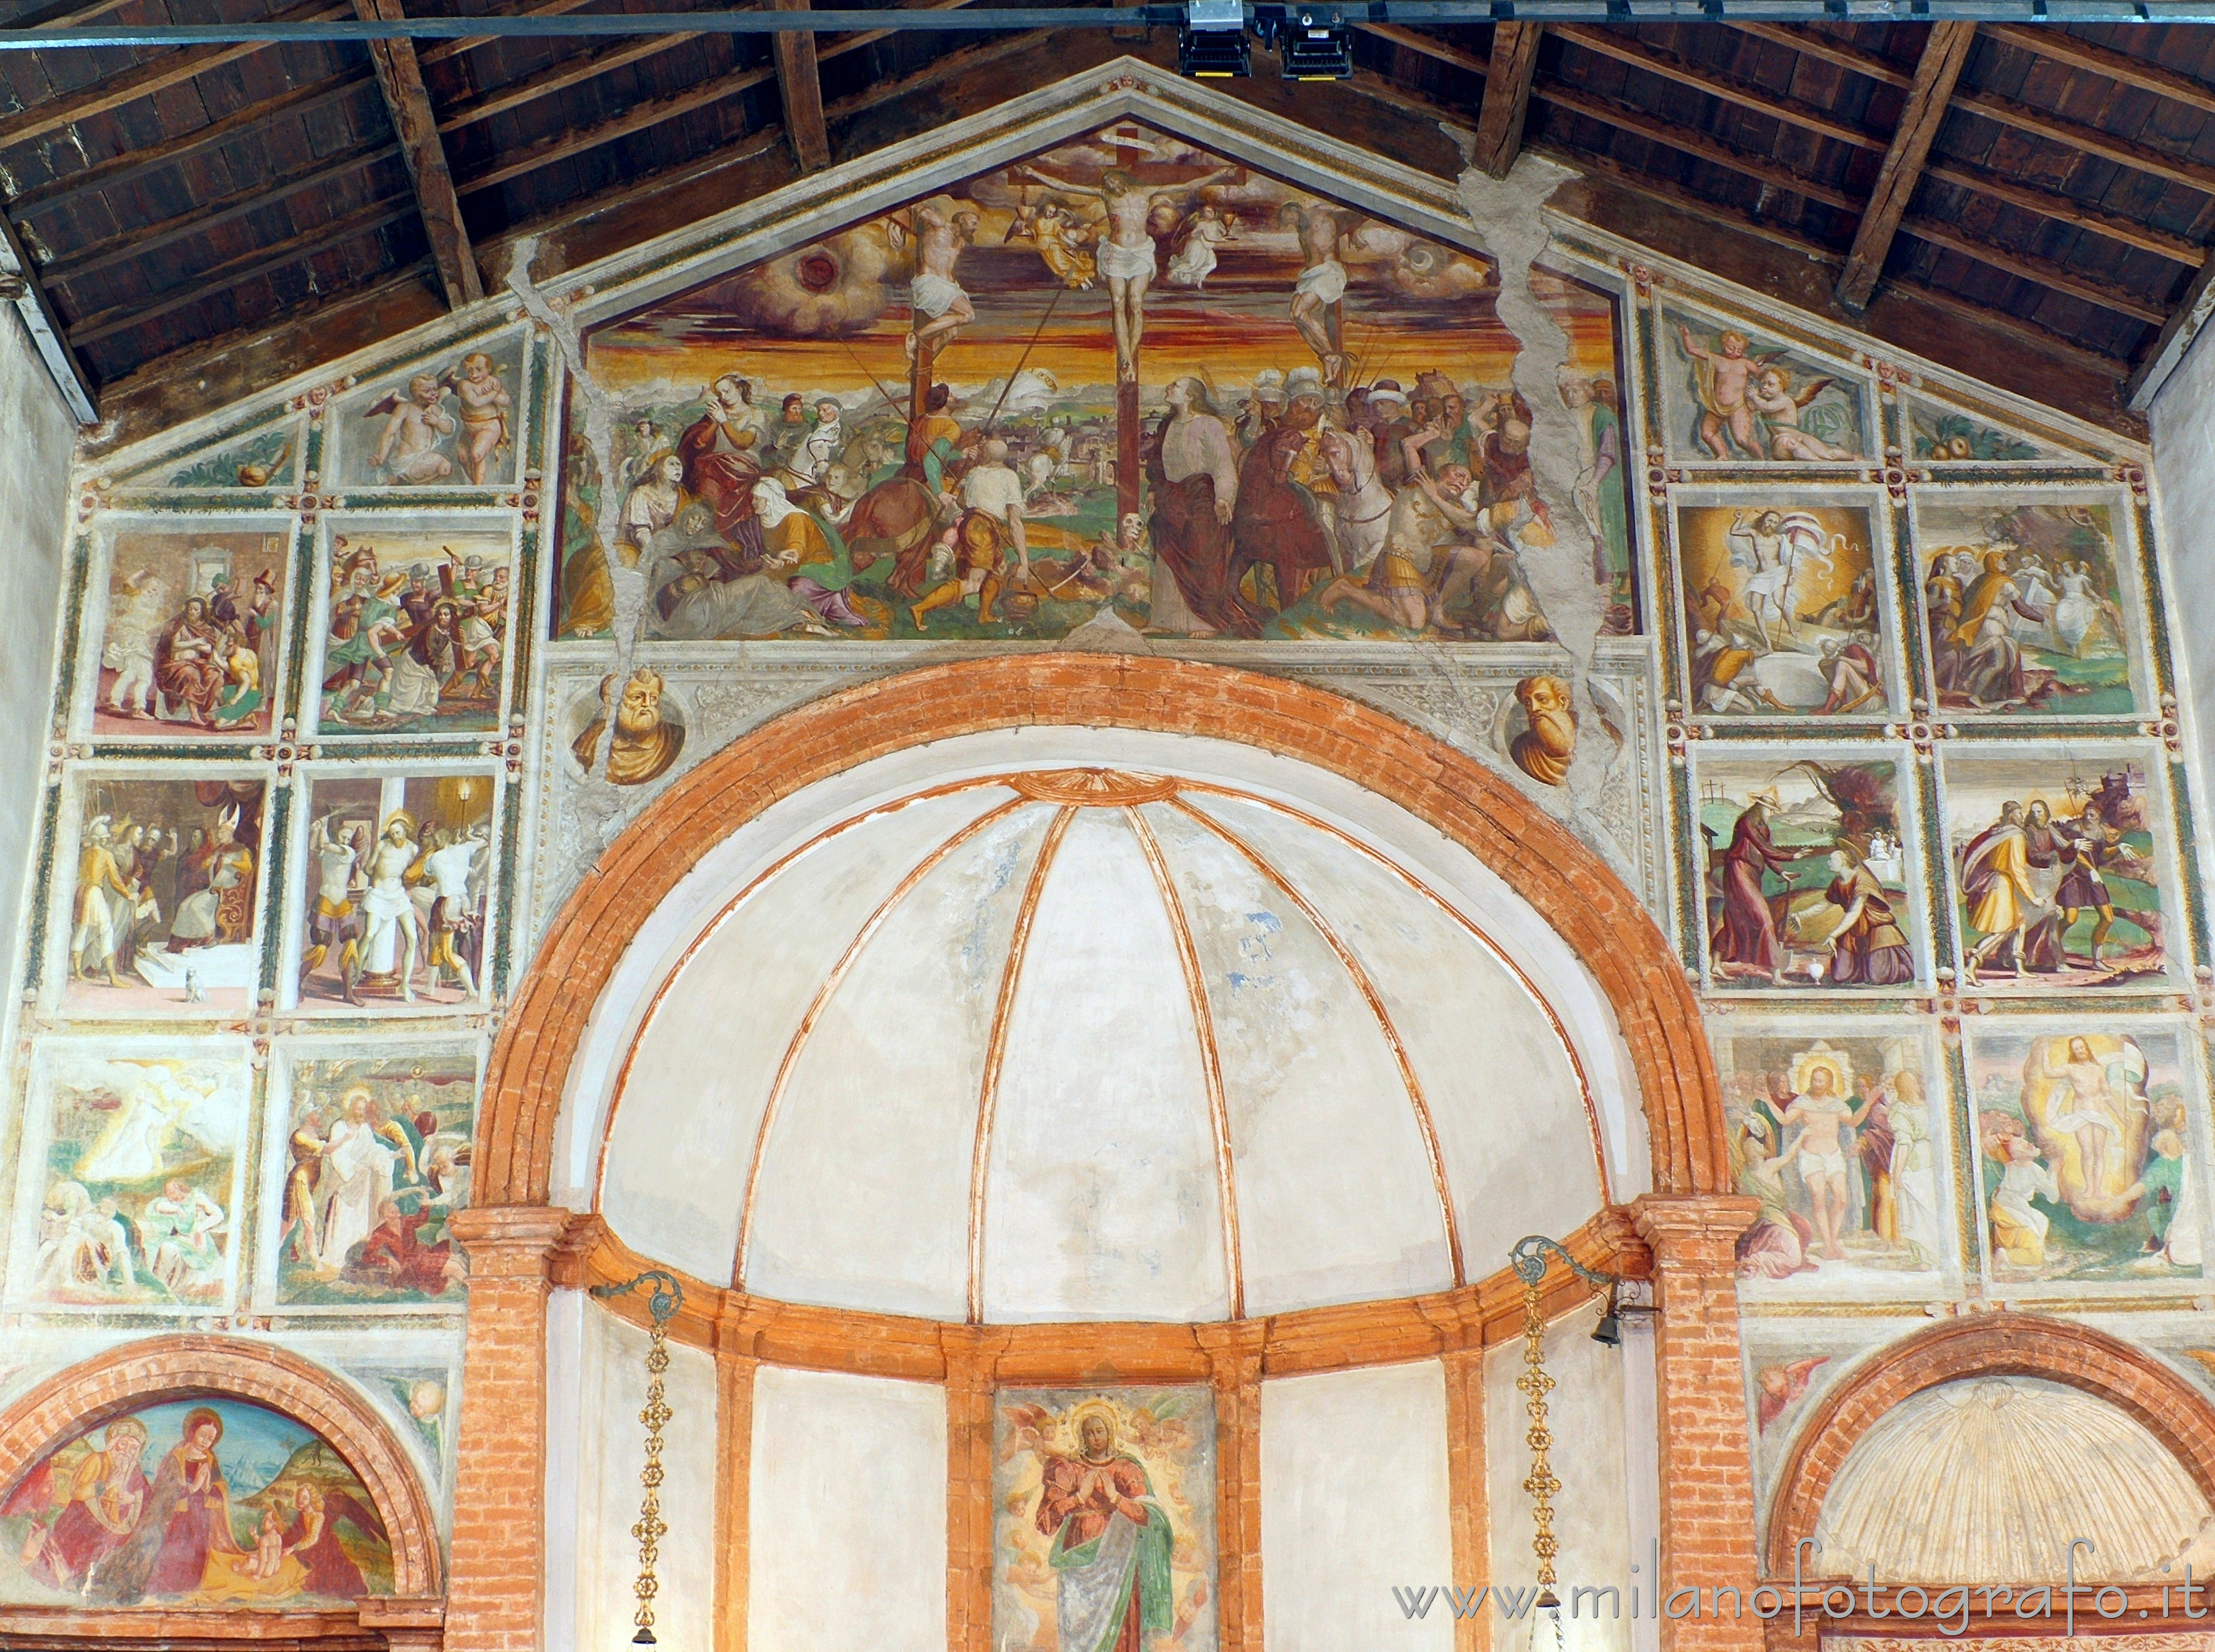 Cavenago di Brianza (Monza e Brianza, Italy): Cycle of frescoes dedicated to the life of Jesus in the Church of Santa Maria in Campo - Cavenago di Brianza (Monza e Brianza, Italy)